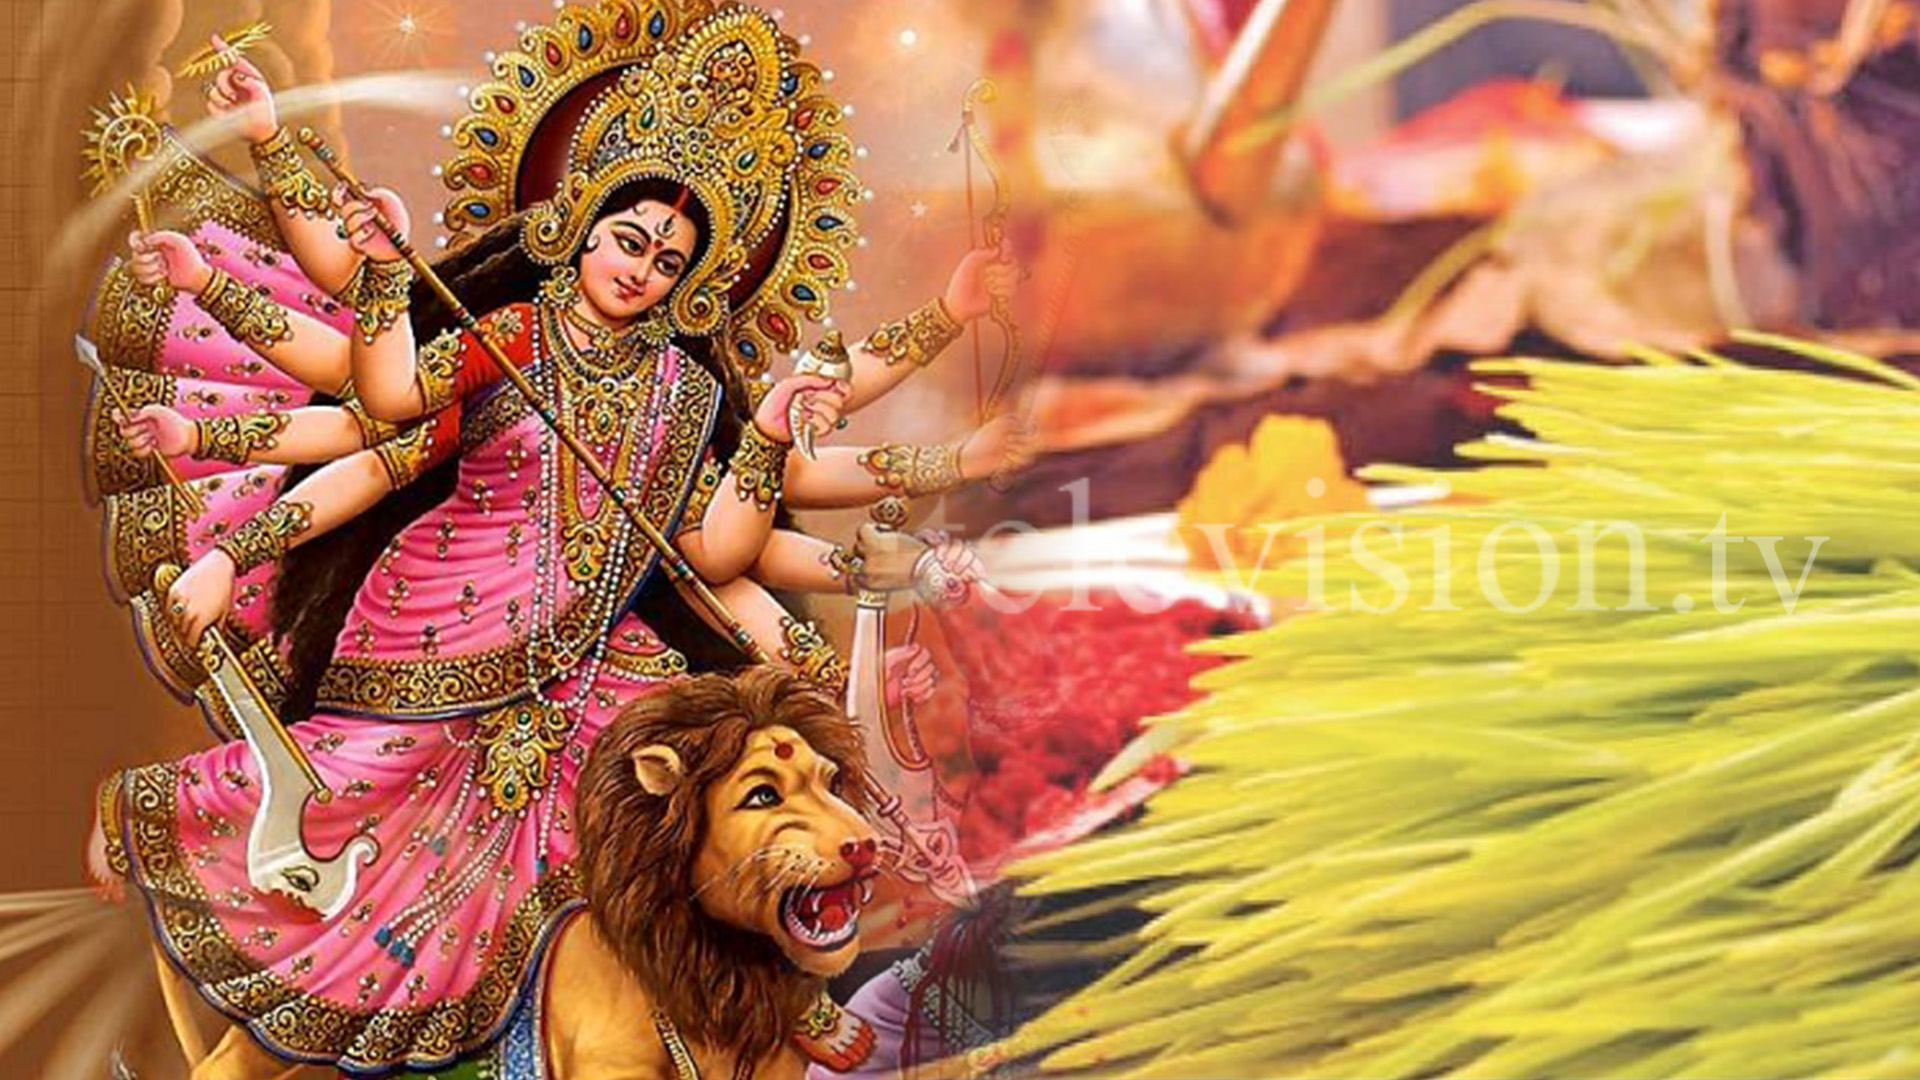 Mahanavami celebrated worshiping and adoring Durga Bhawani